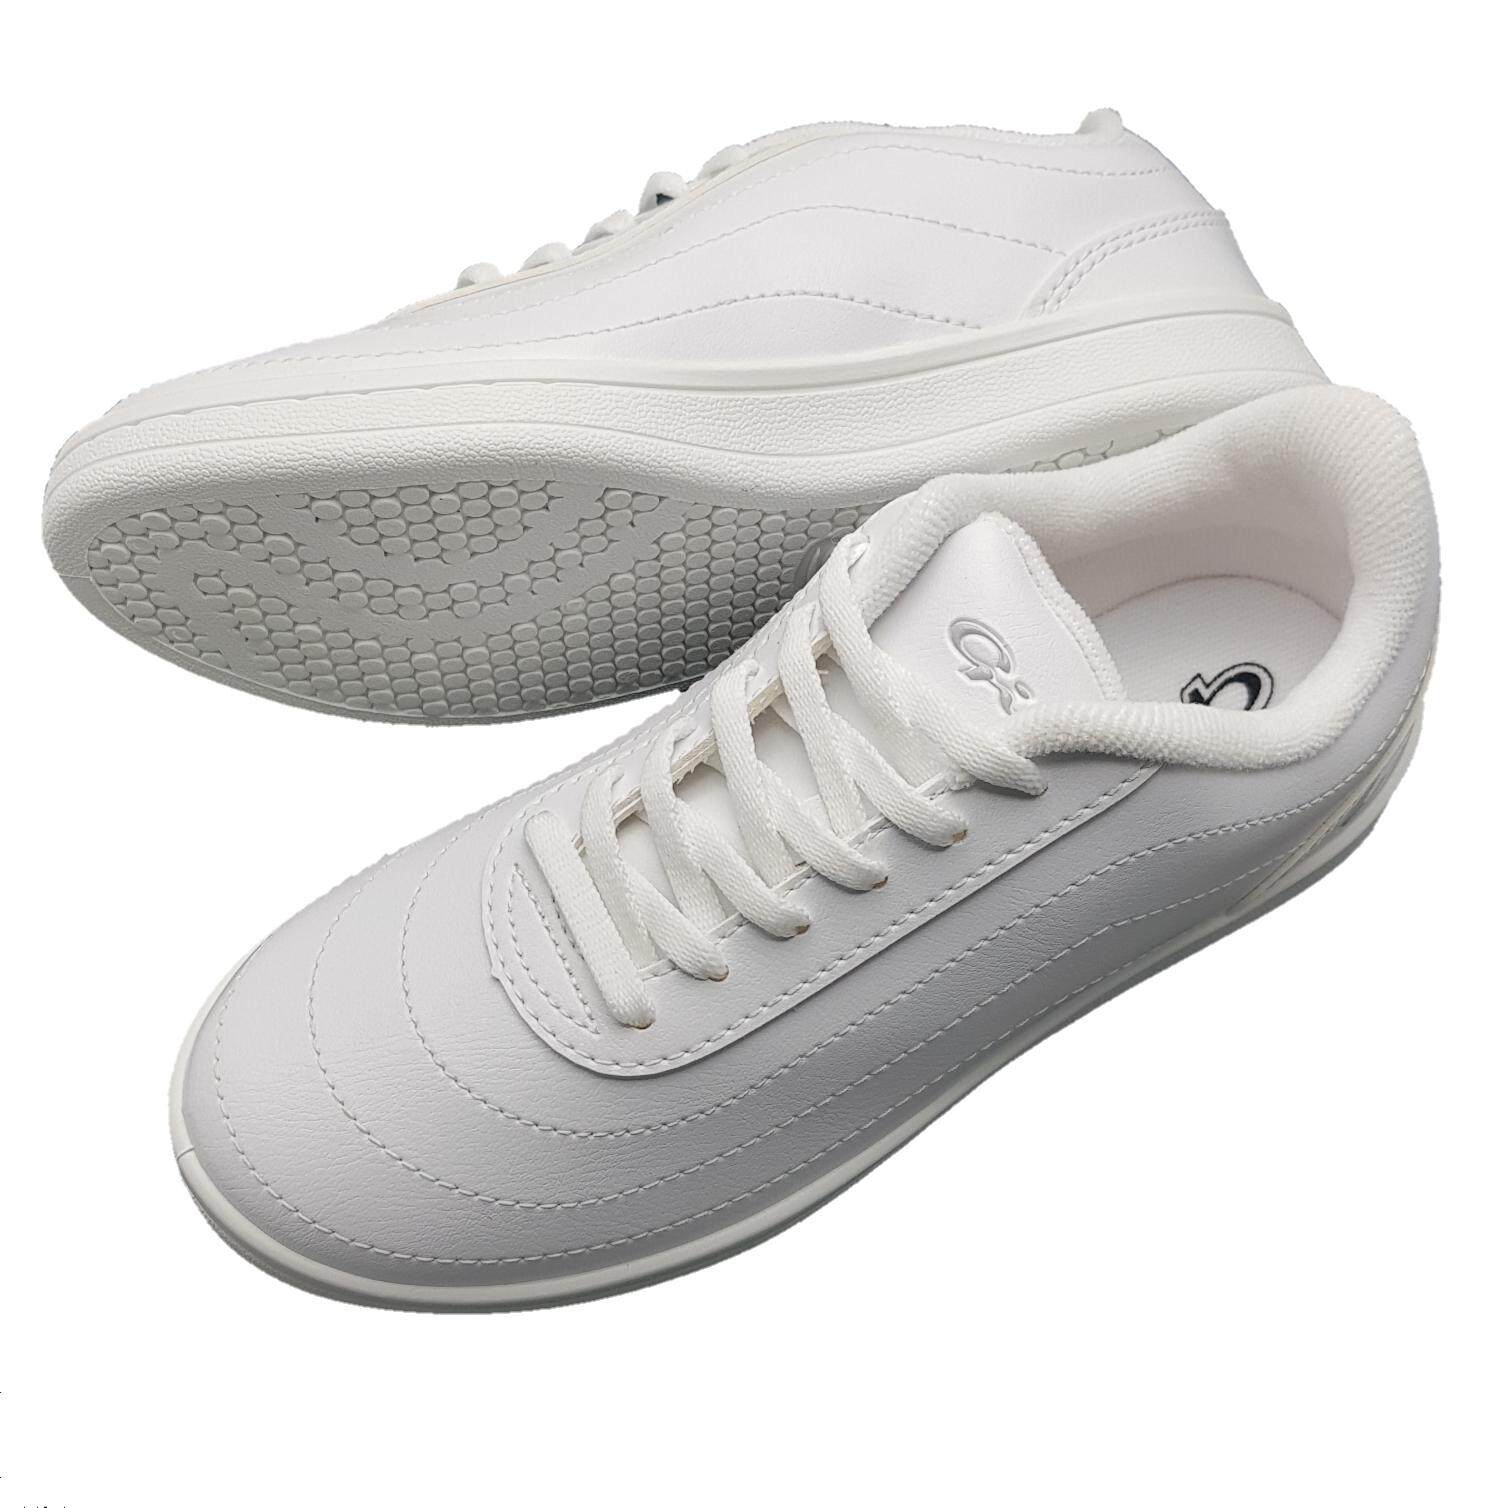 GIGA รองเท้าผ้าใบผูกเชือก รุ่น GS06 สีขาว ไซส์ 36-41